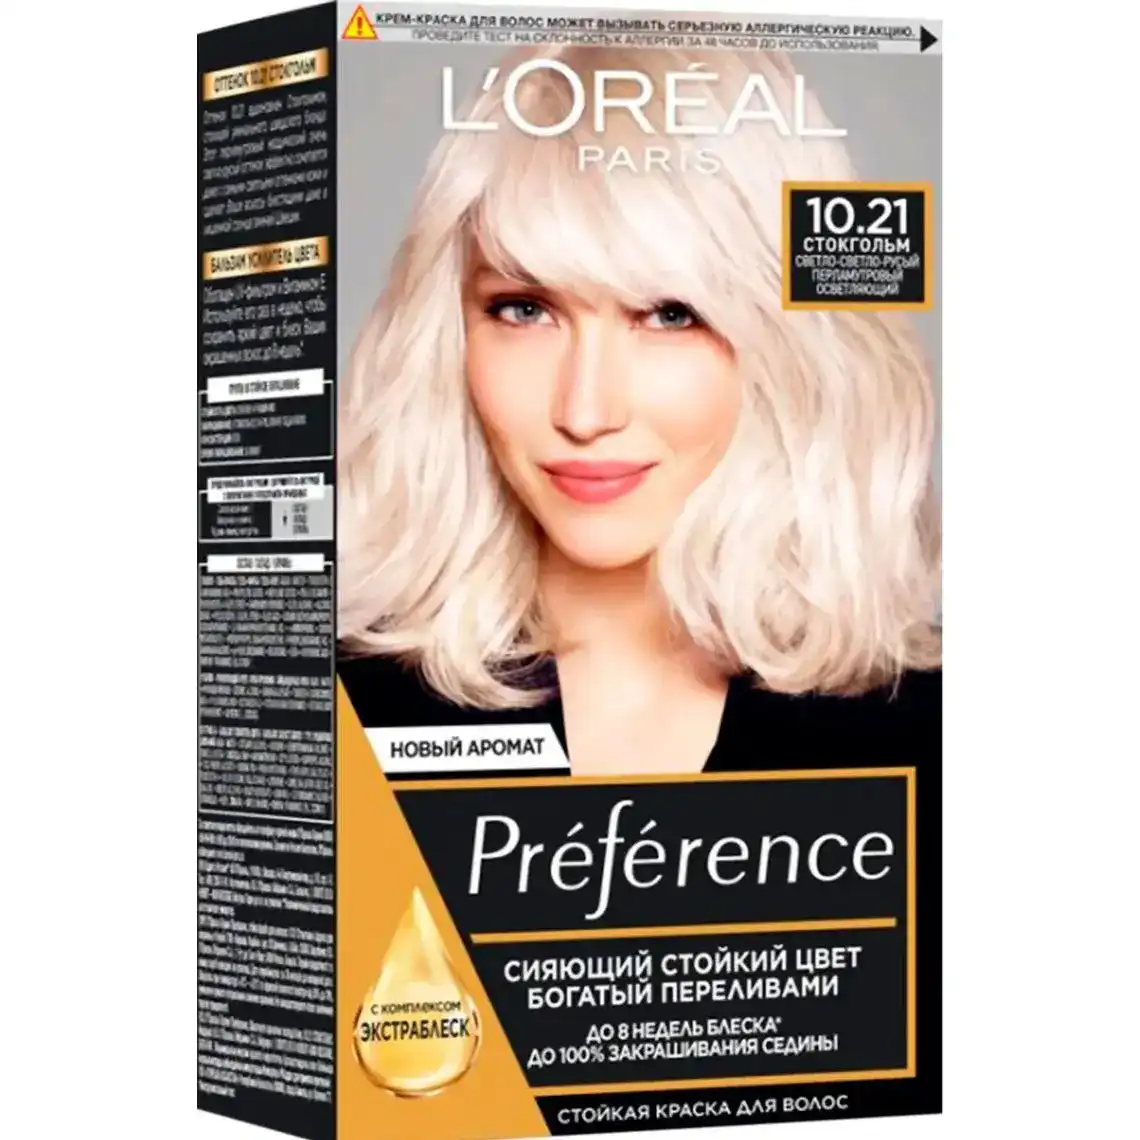 Крем-фарба для волосся L'Oreal Paris Preference 10.21 стокгольм